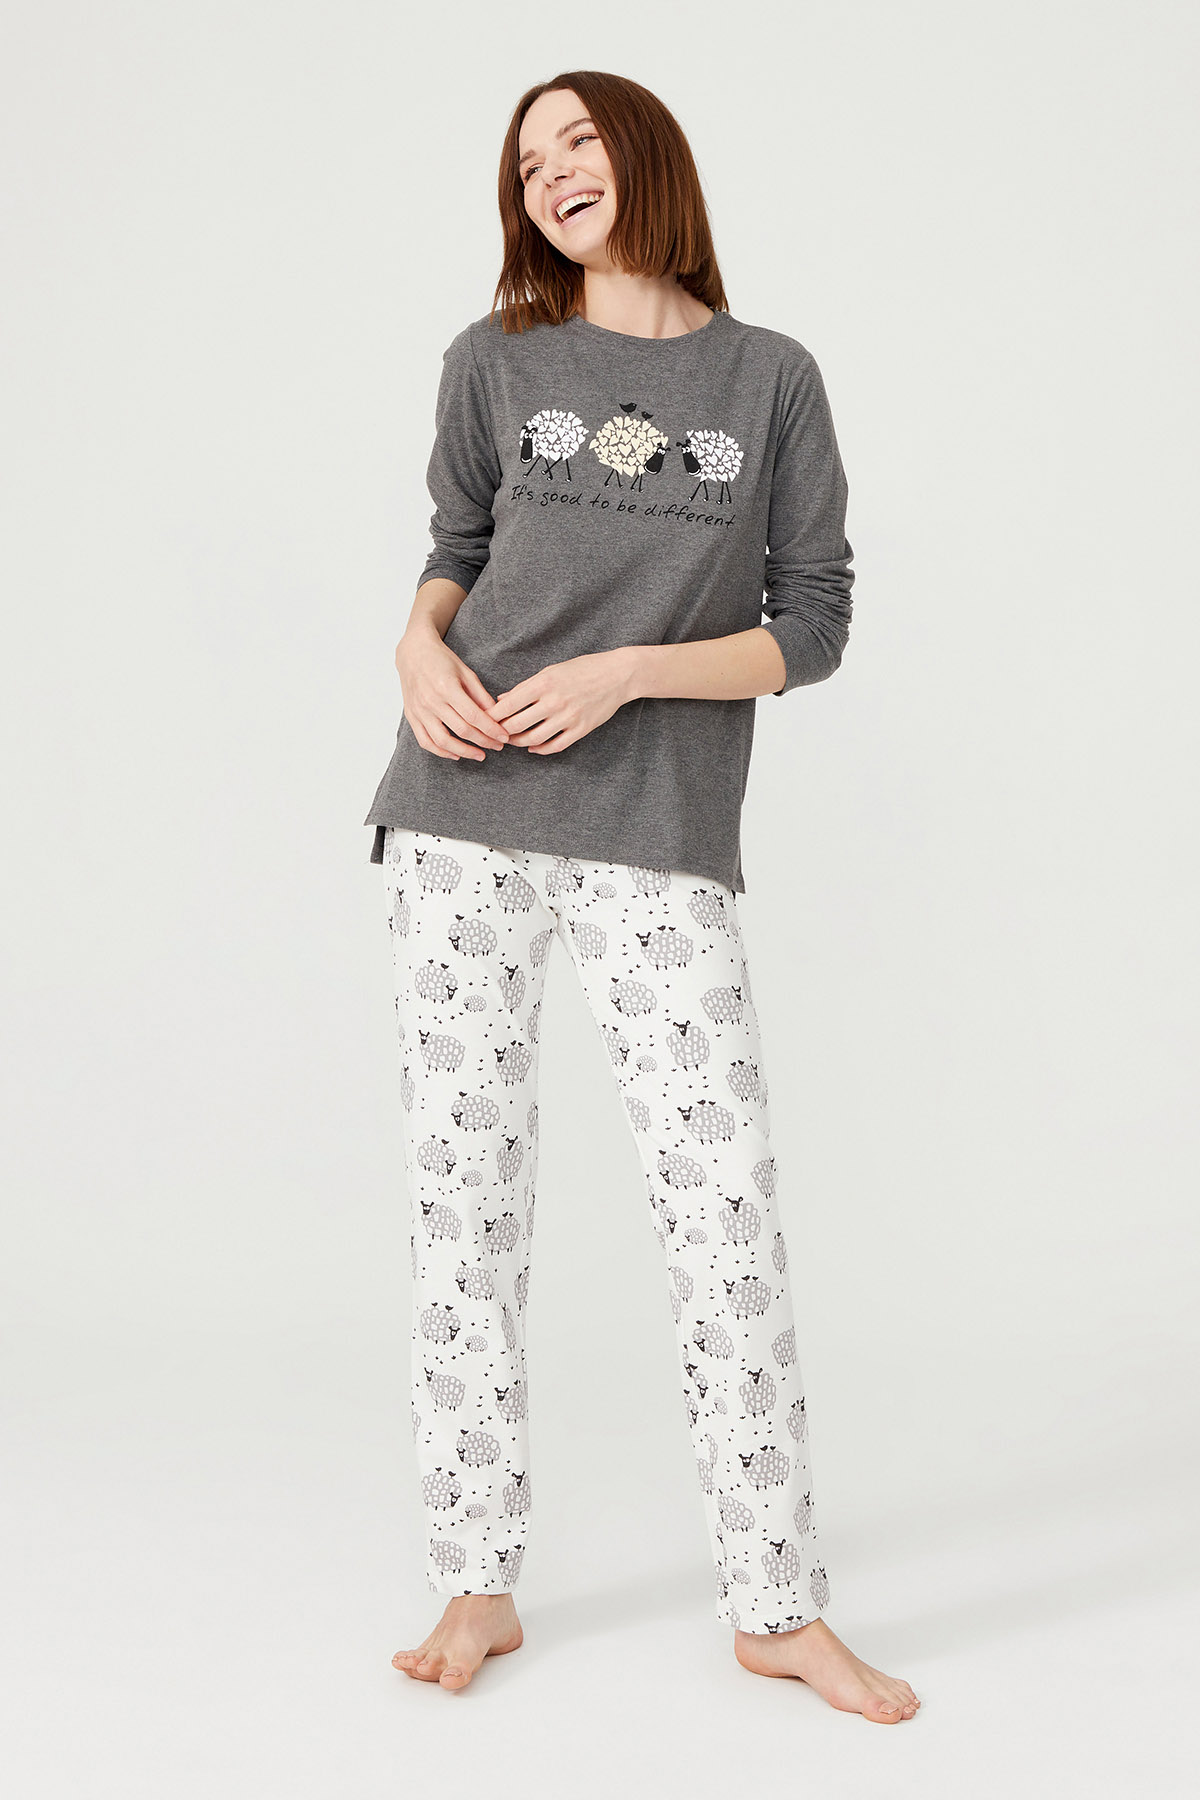 Kadın Kuzu Baskılı Pamuklu Uzun Pijama Takımı